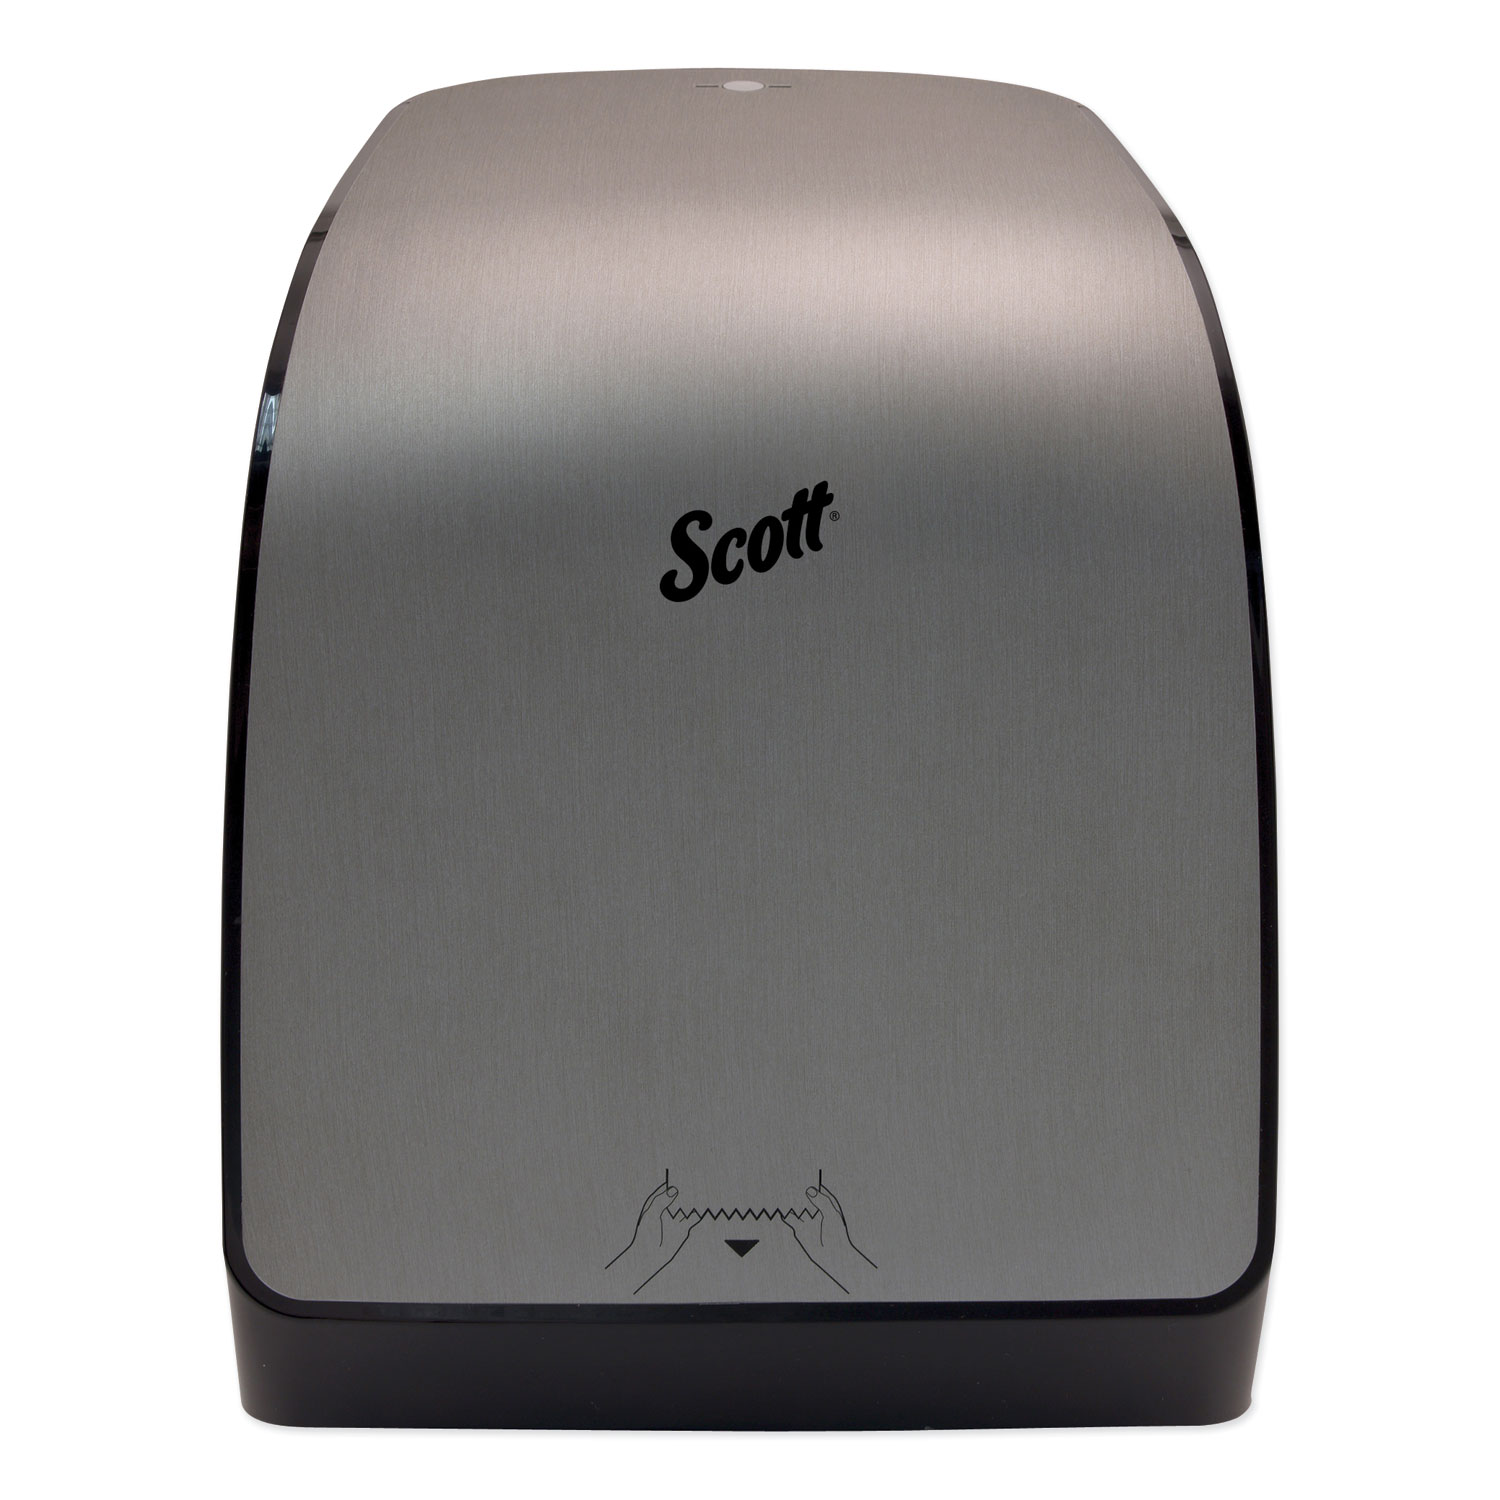  Scott 35612 Pro Mod Manual Hard Roll Towel Dispenser, 12.66 x 9.18 x 16.44, Brushed Metallic (KCC35612) 